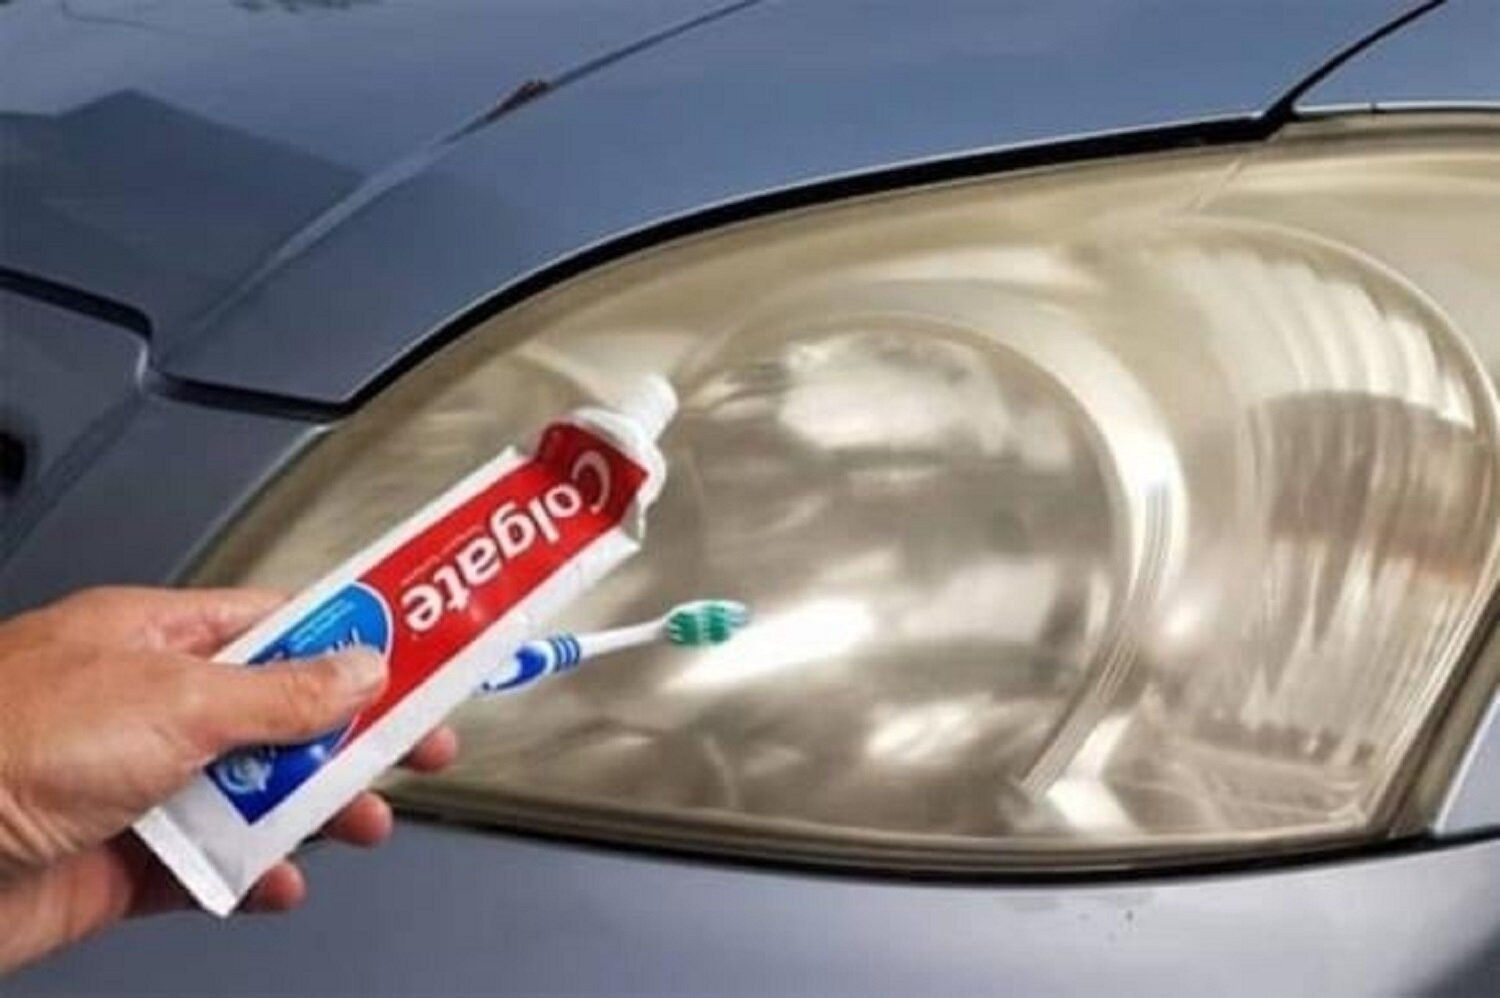 Kem đánh răng có tác dụng chống ngưng đọng nước trên gương xe. (Ảnh minh hoạ).